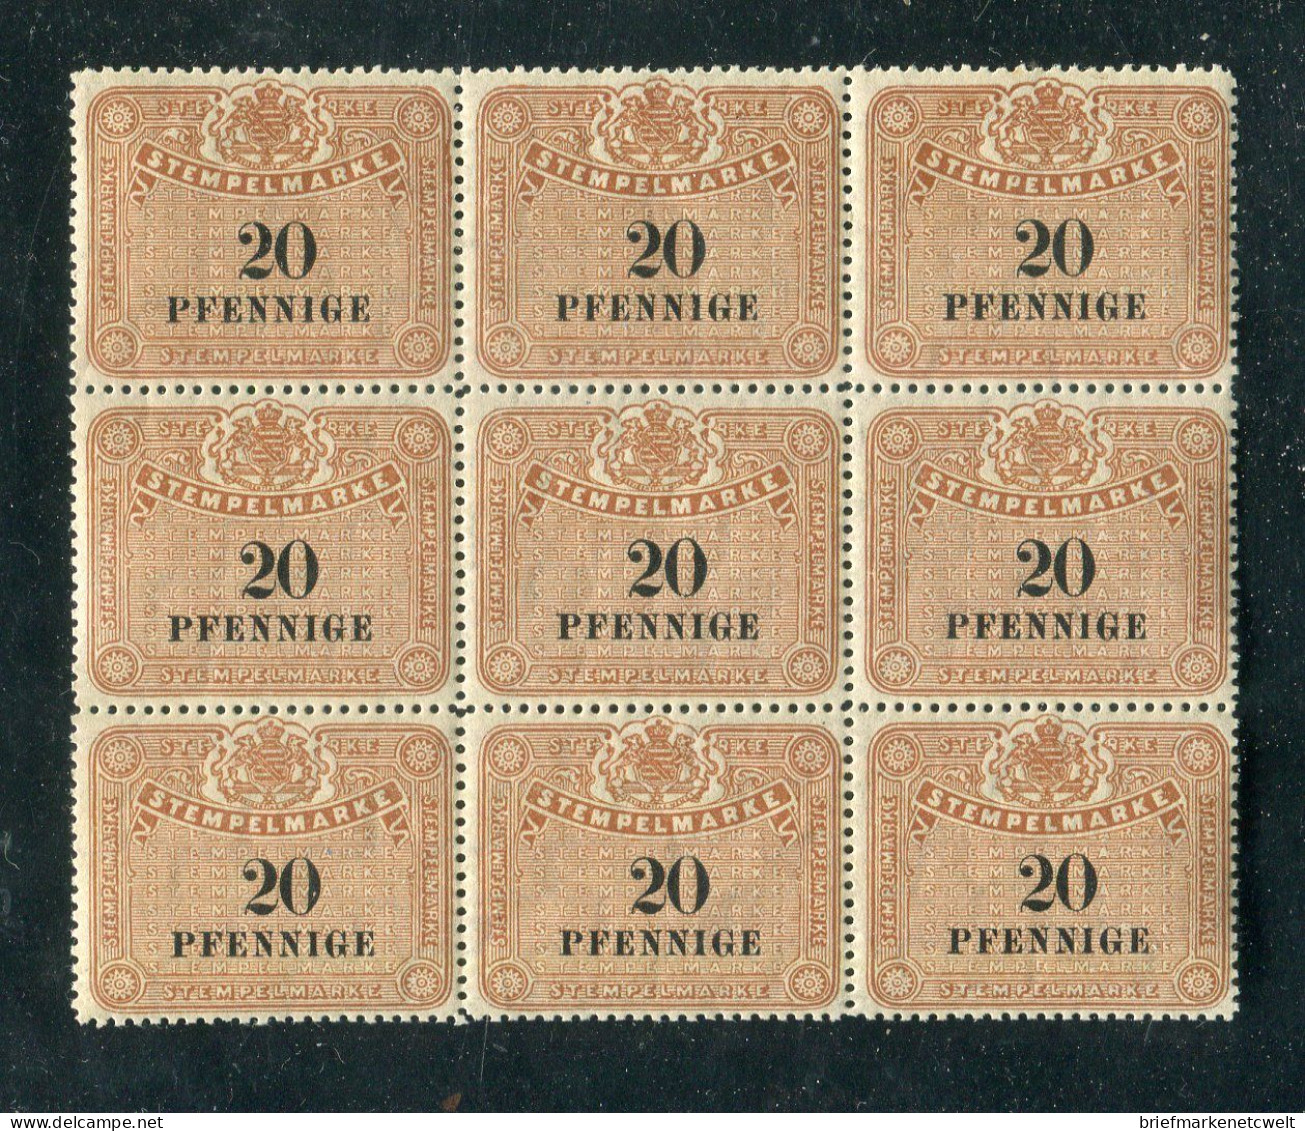 "DEUTSCHLAND" Stempelmarke 20 Pfennige 9er-Block ** (B0094) - Sammlungen